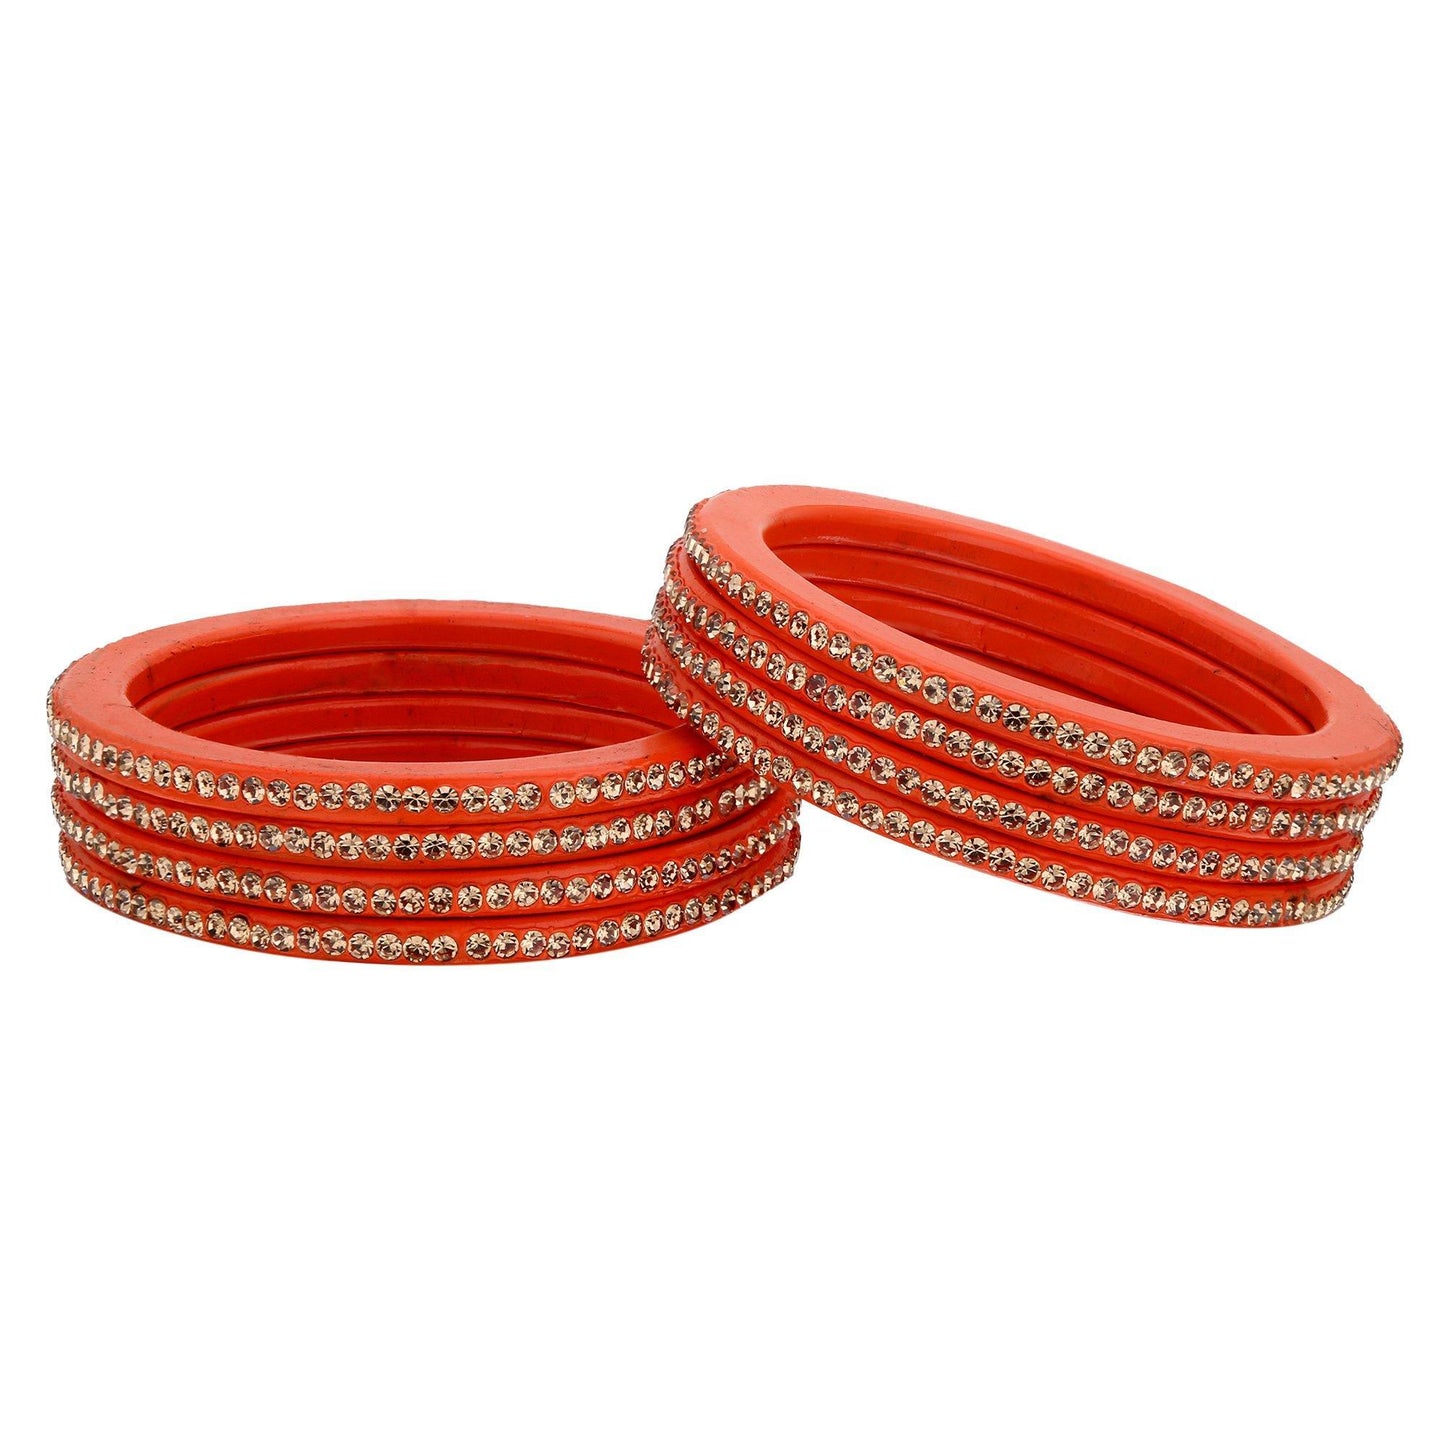 sukriti rajasthani ethnic orange lac bangles for women - set of 8